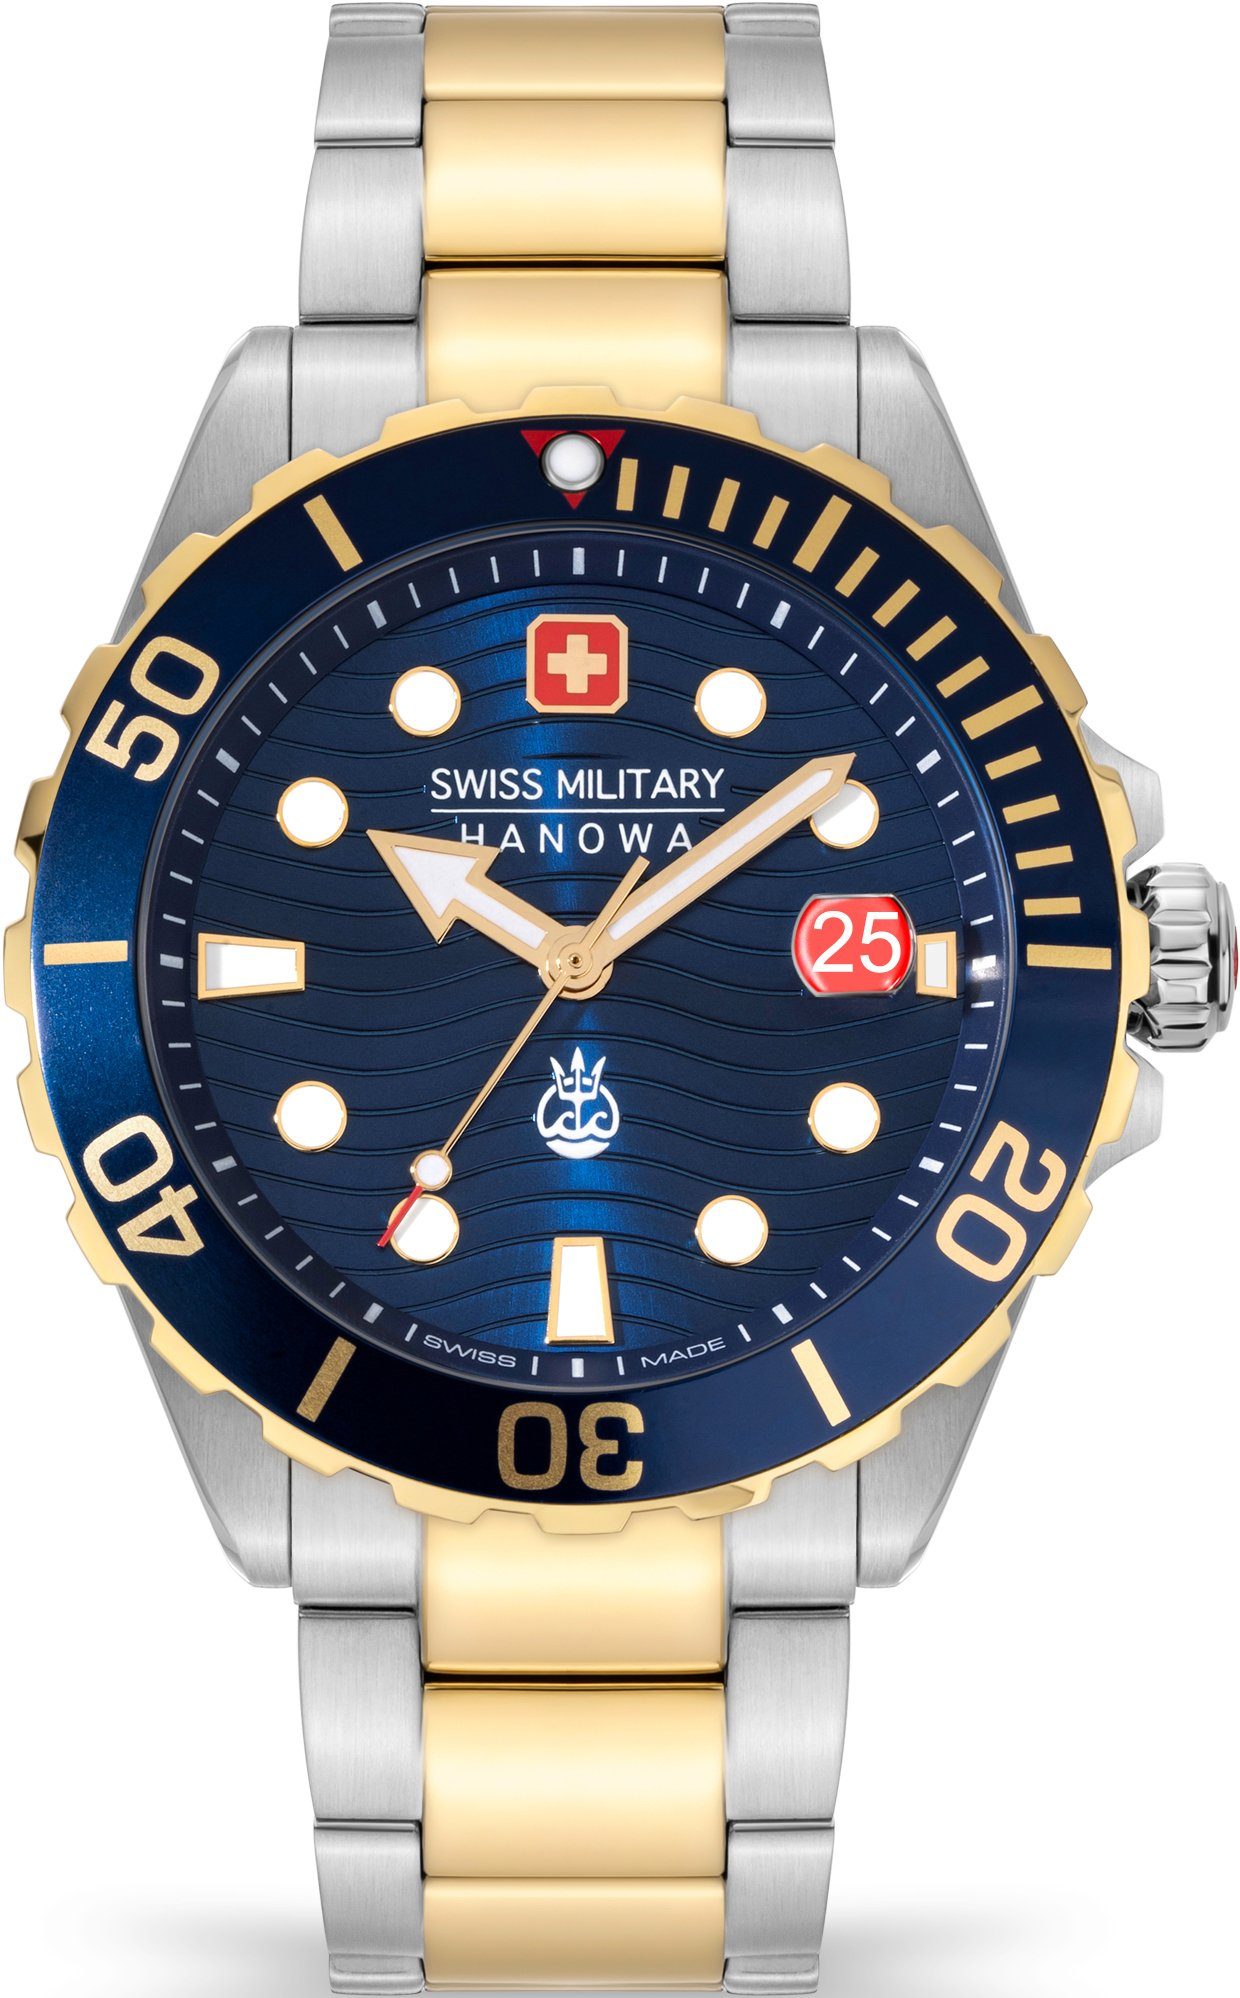 Swiss Military Hanowa Schweizer Uhr OFFSHORE Blau SMWGH2200360 II, DIVER